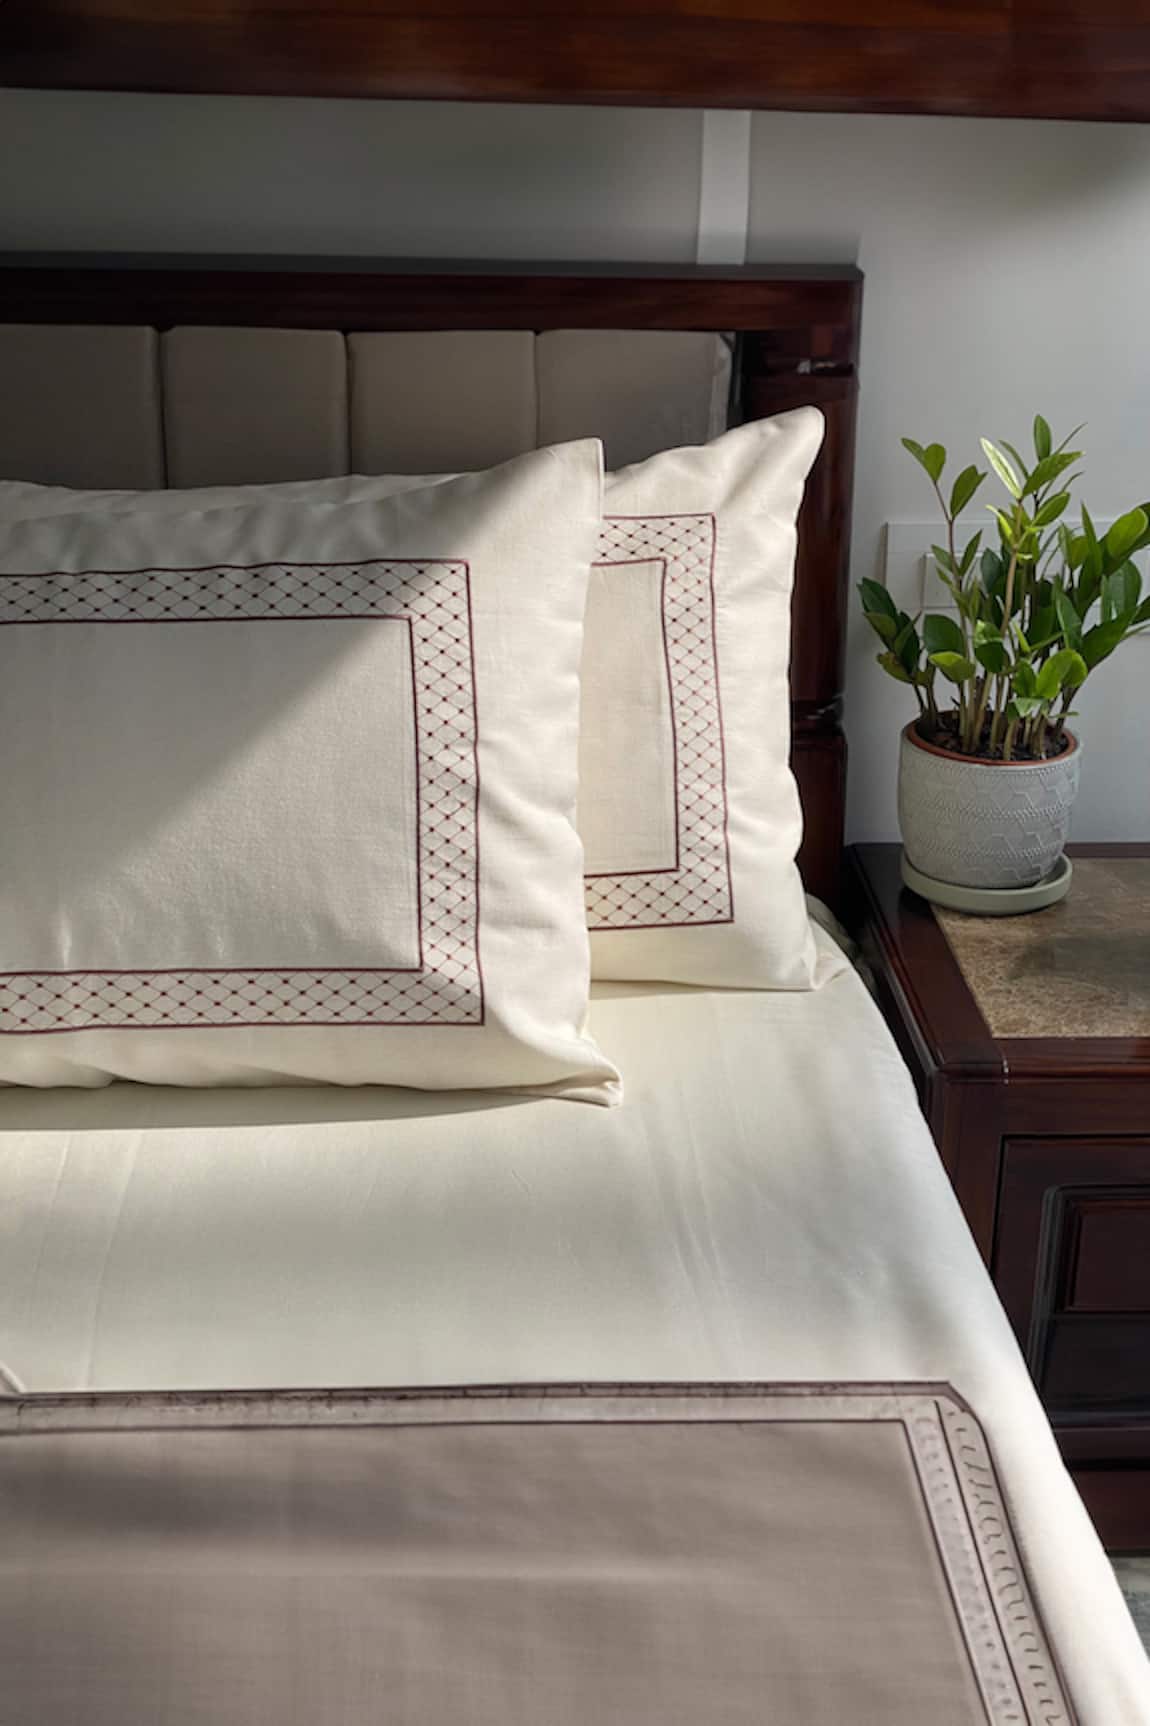 Sadyaska Cotton Bedsheet With Pillow Covers